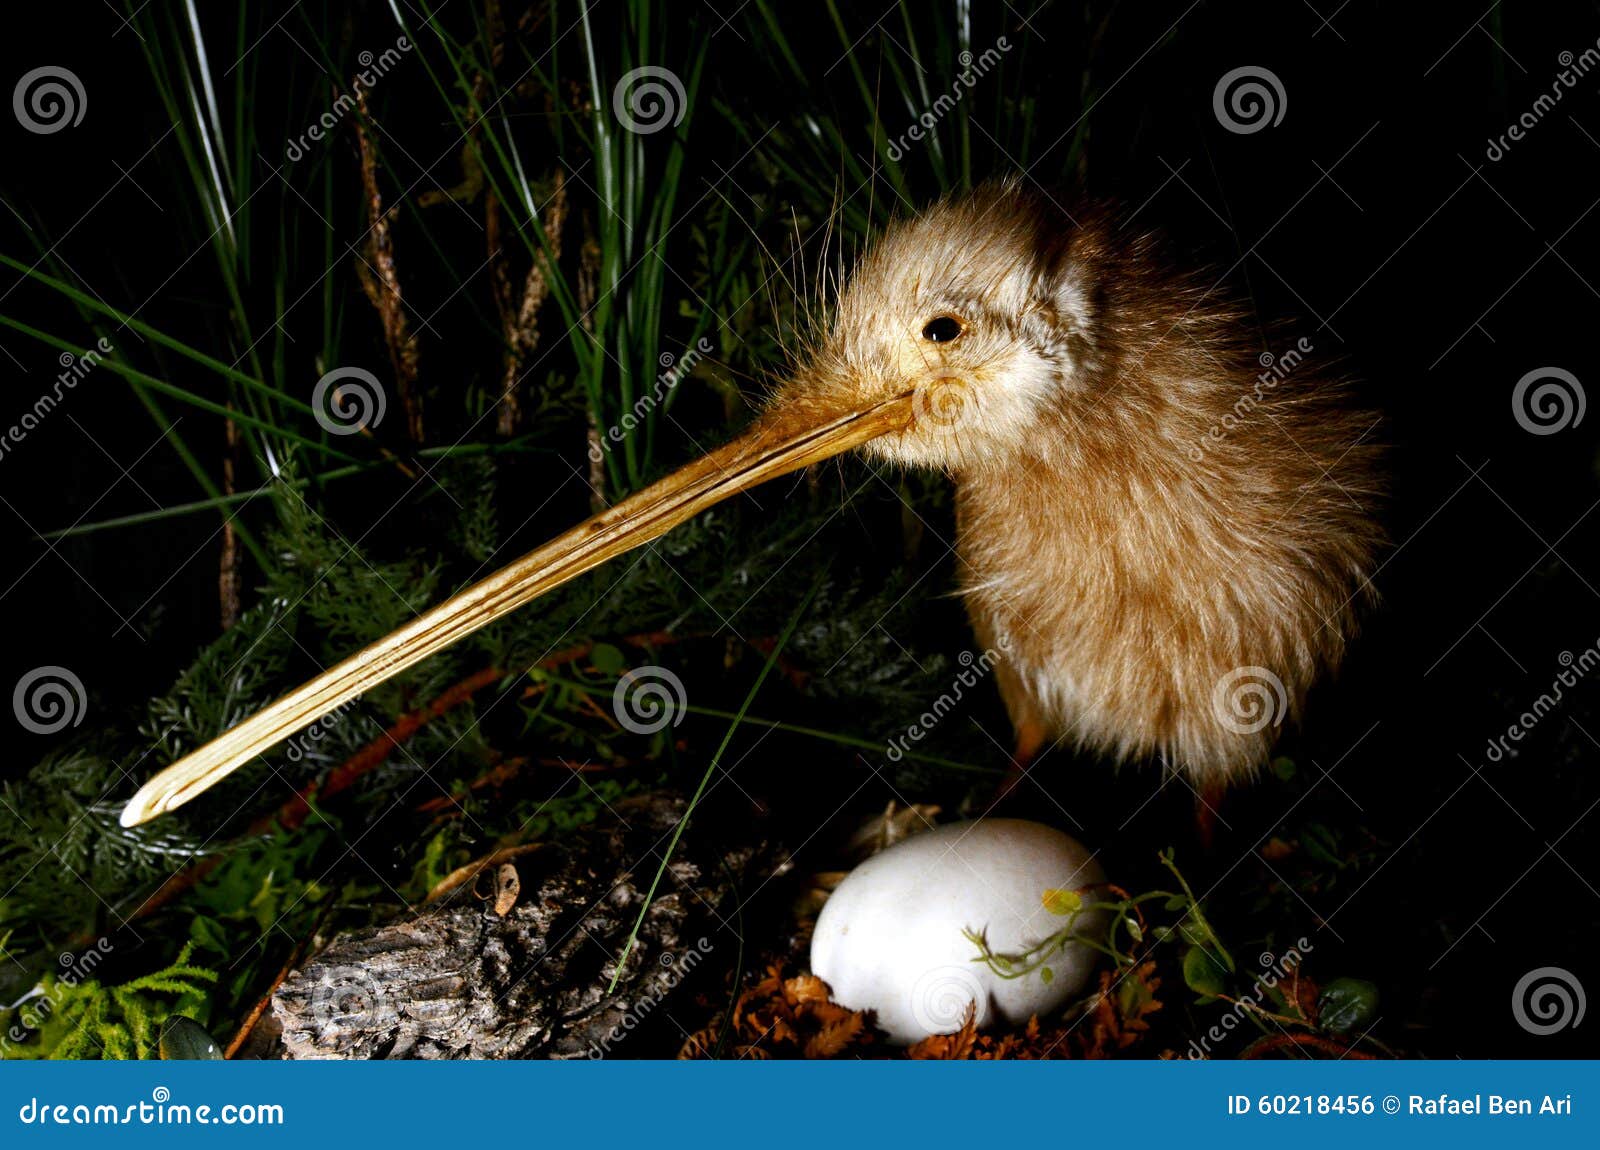 kiwi bird and an egg